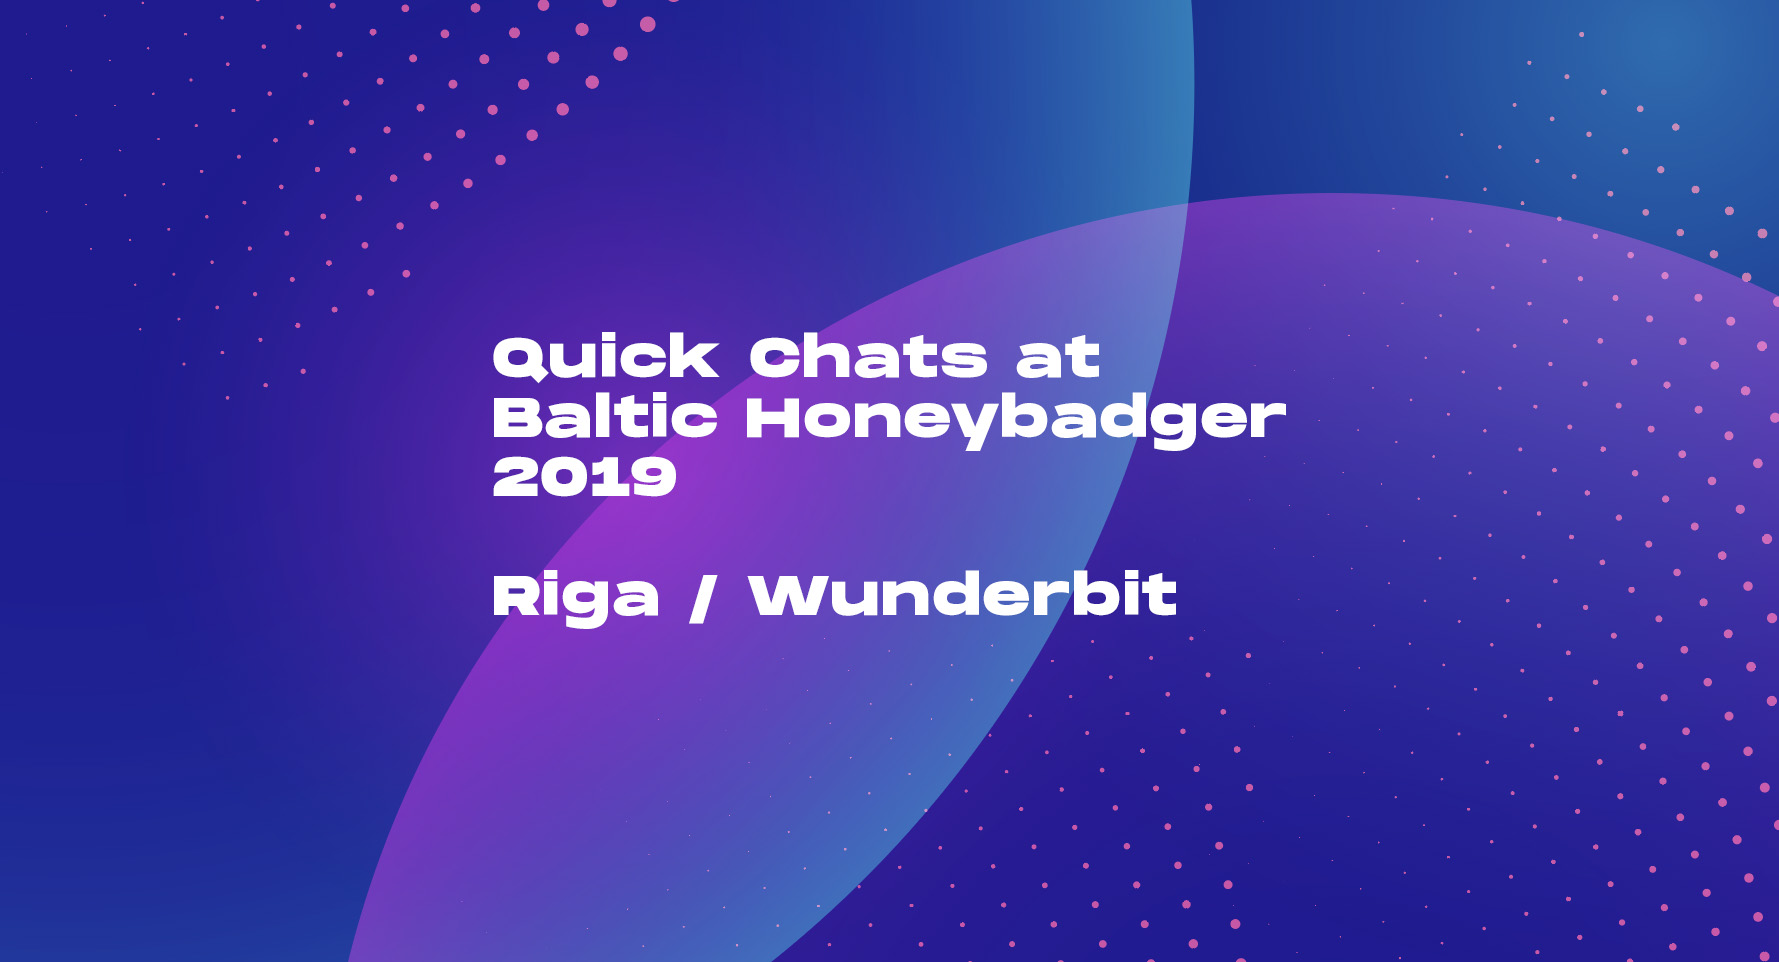 落 Review of the conference “Baltic Honeybadger 2019”